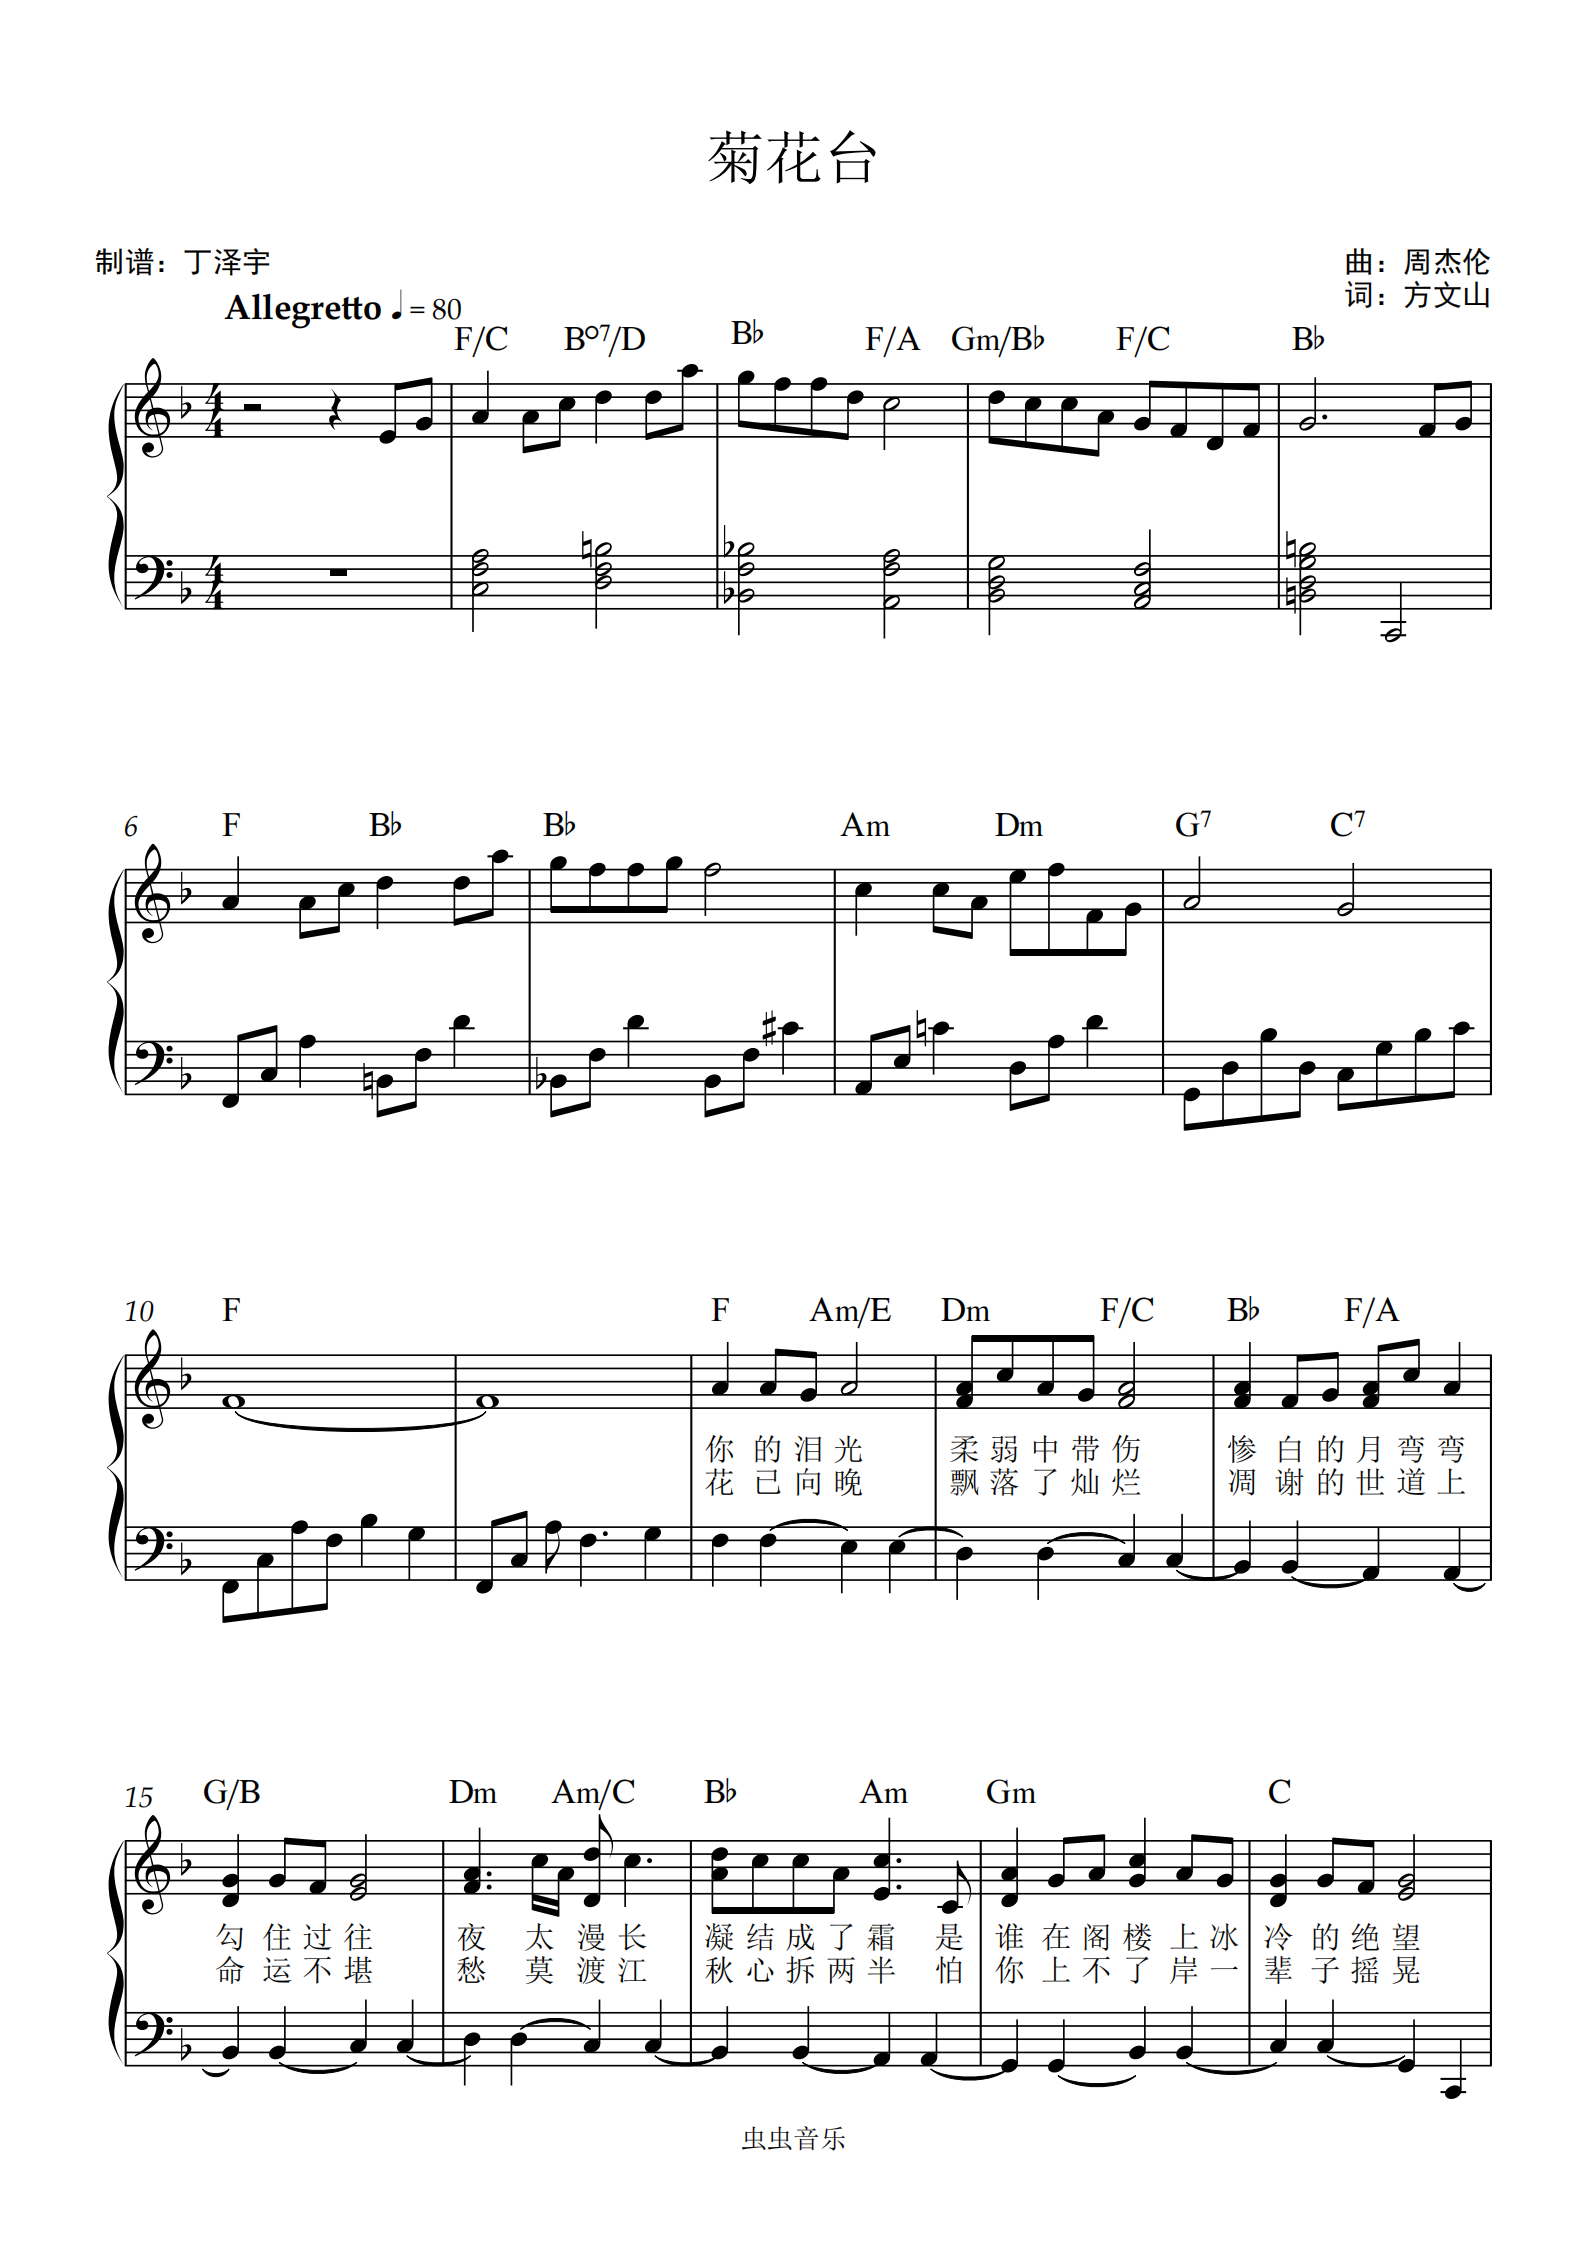 菊花台-周杰伦 独奏弹唱谱 带歌词和弦标记